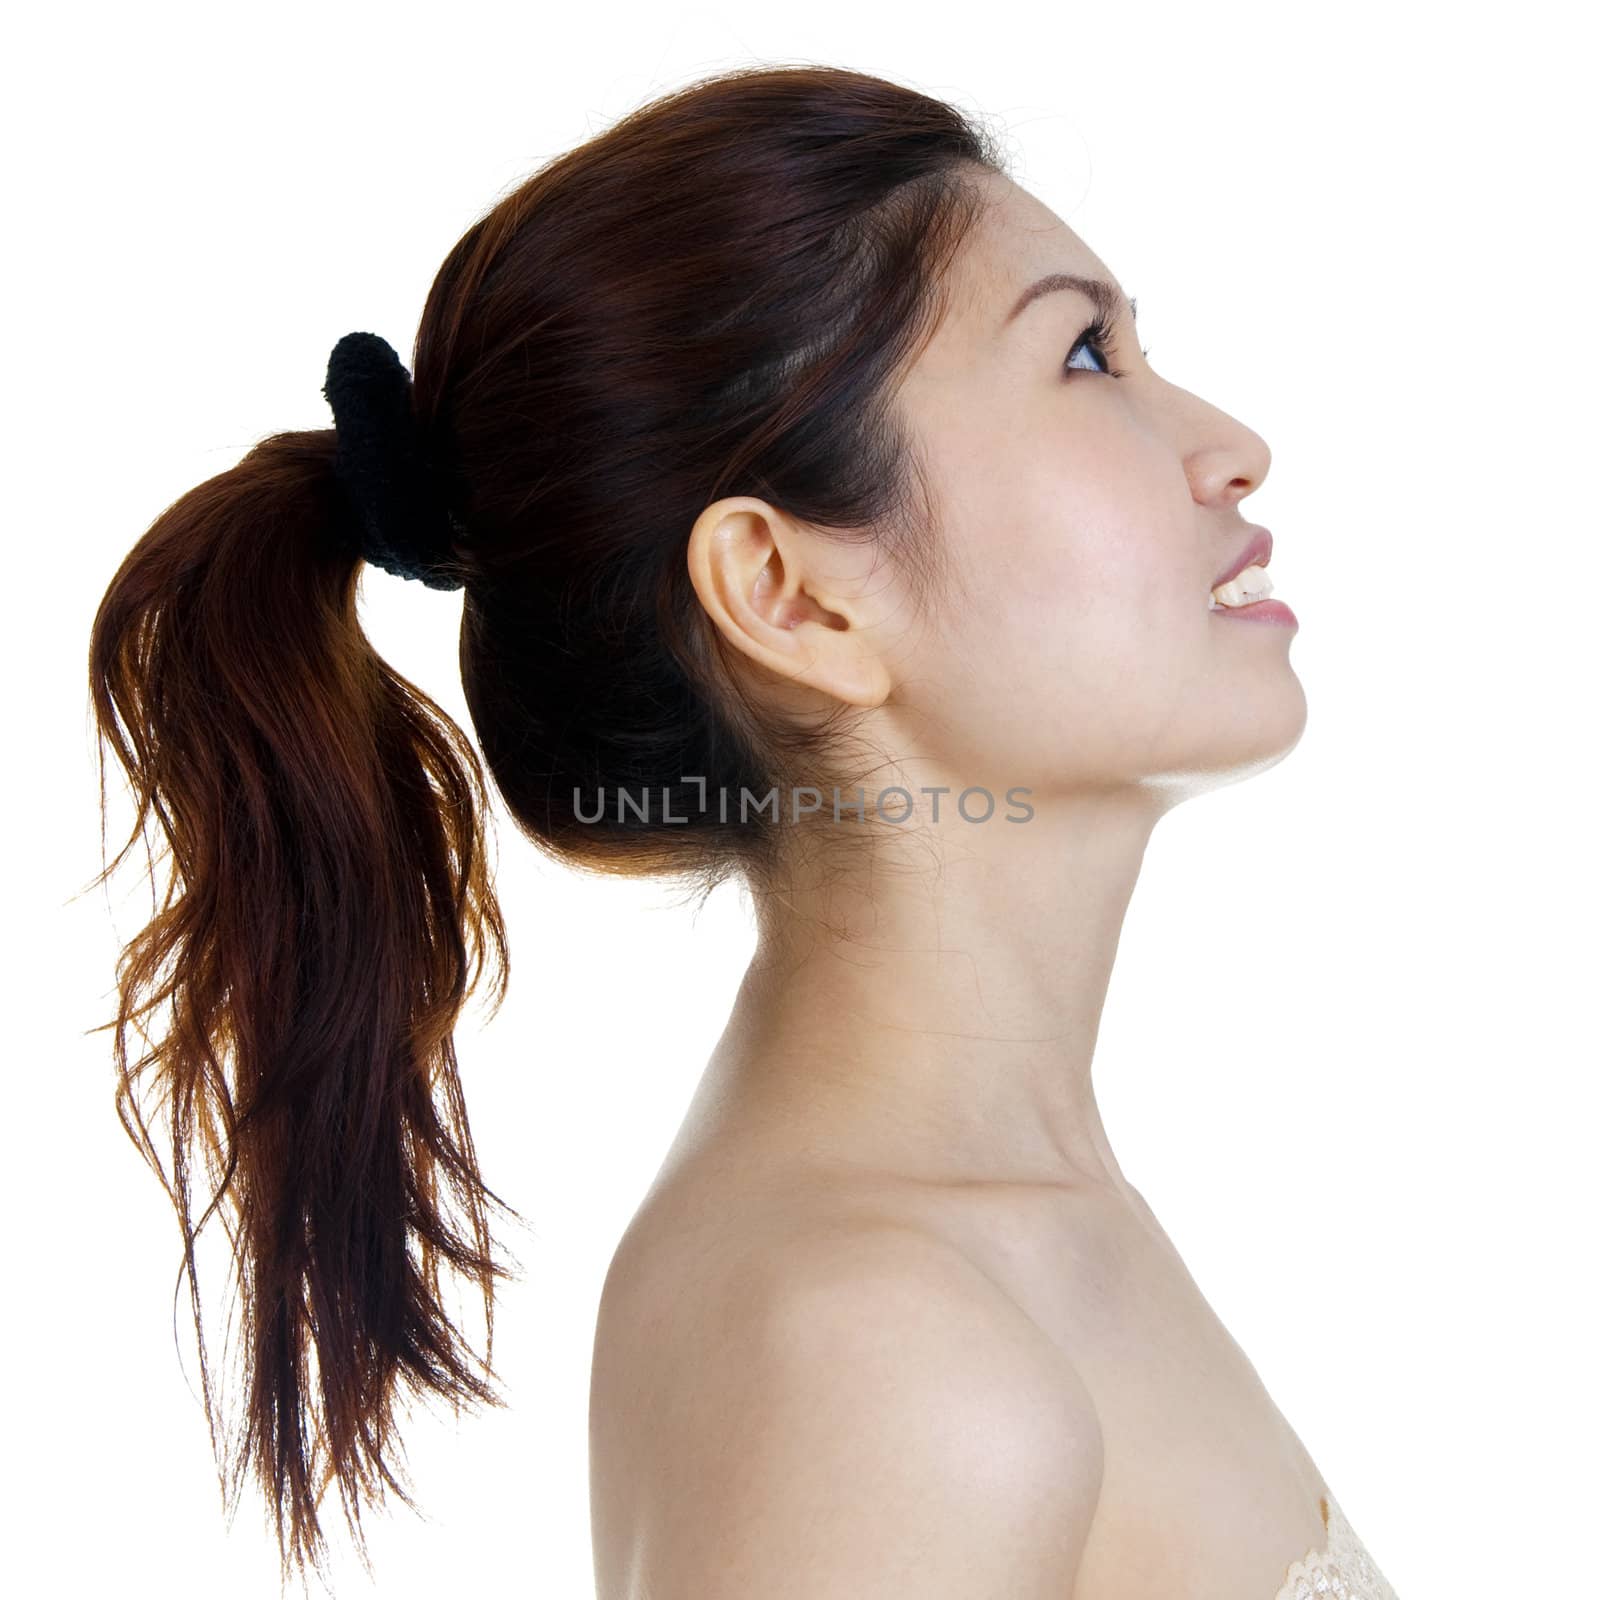 Profile of beautiful woman by szefei